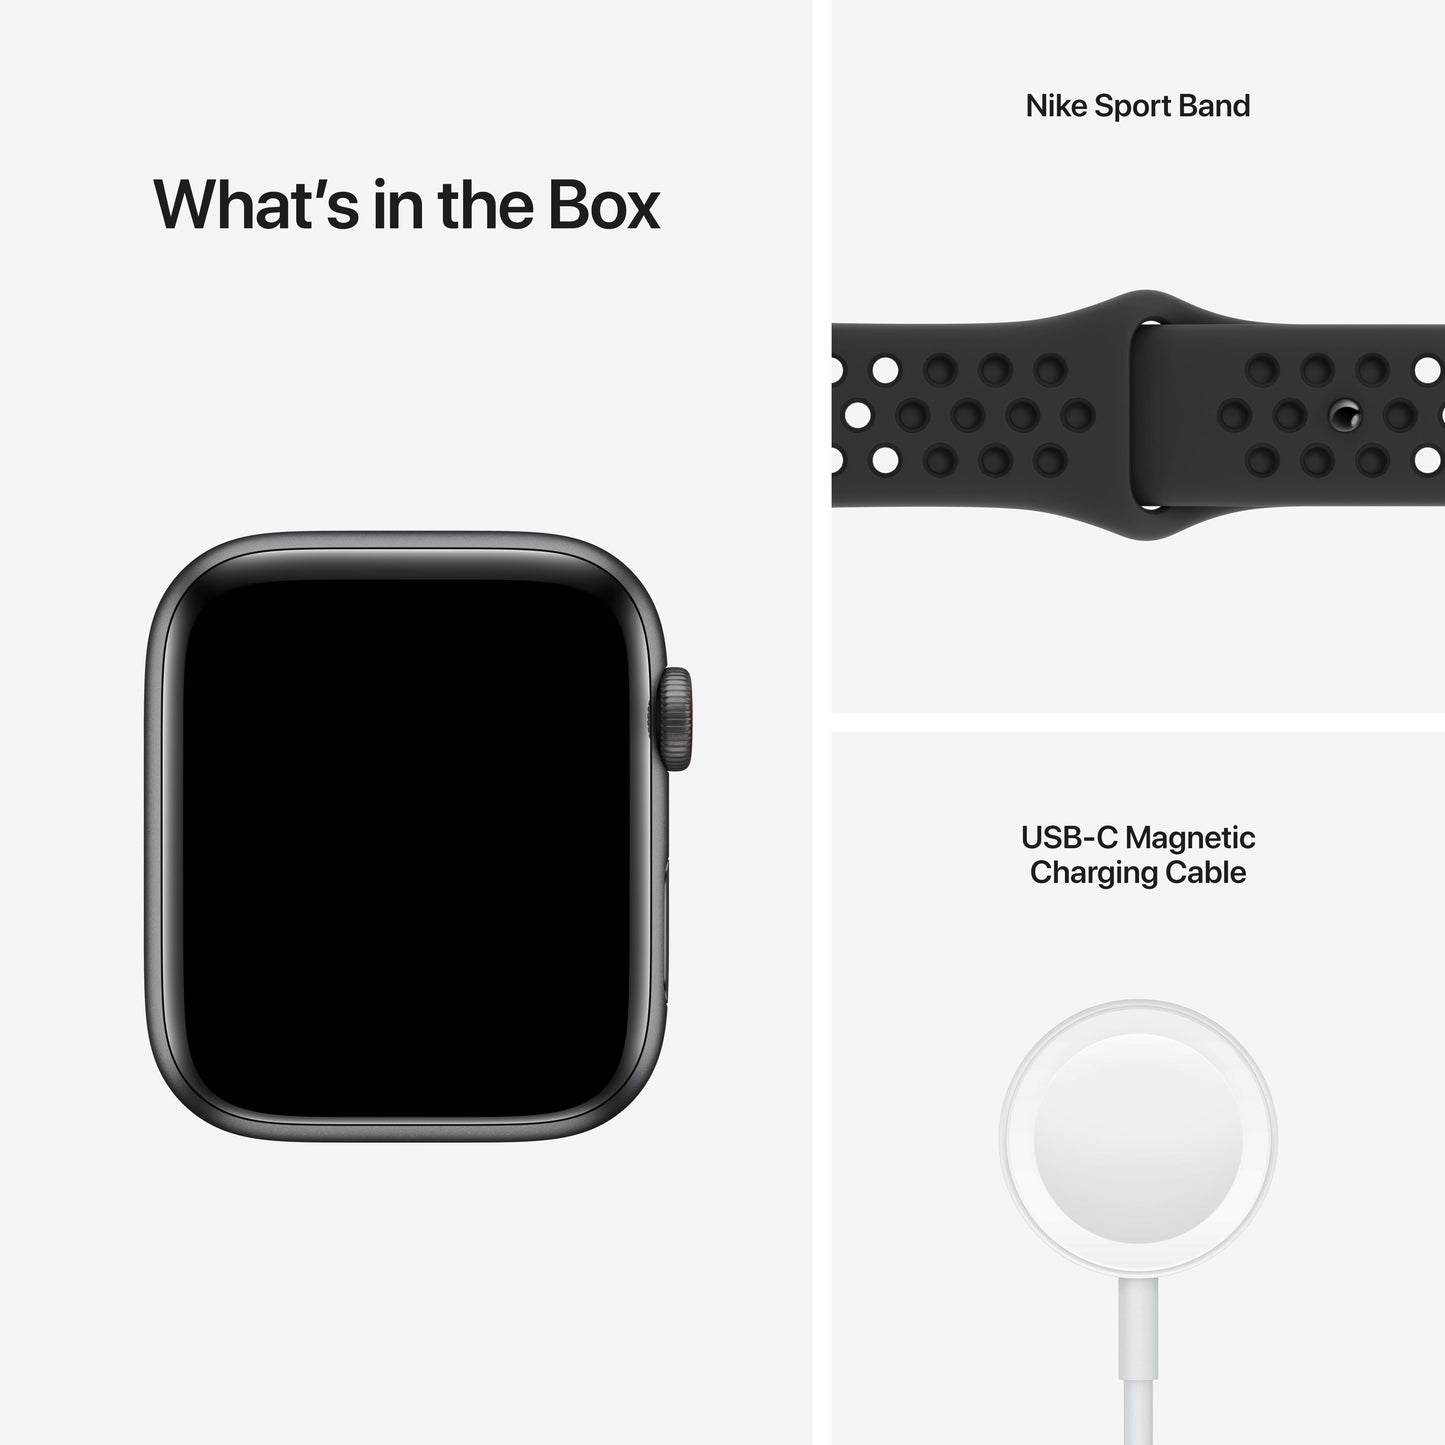 Apple Watch Nike SE (GPS+Cellular) - Caja de aluminio en plata 44 mm - Correa Nike Sport antracita/negra - Talla única